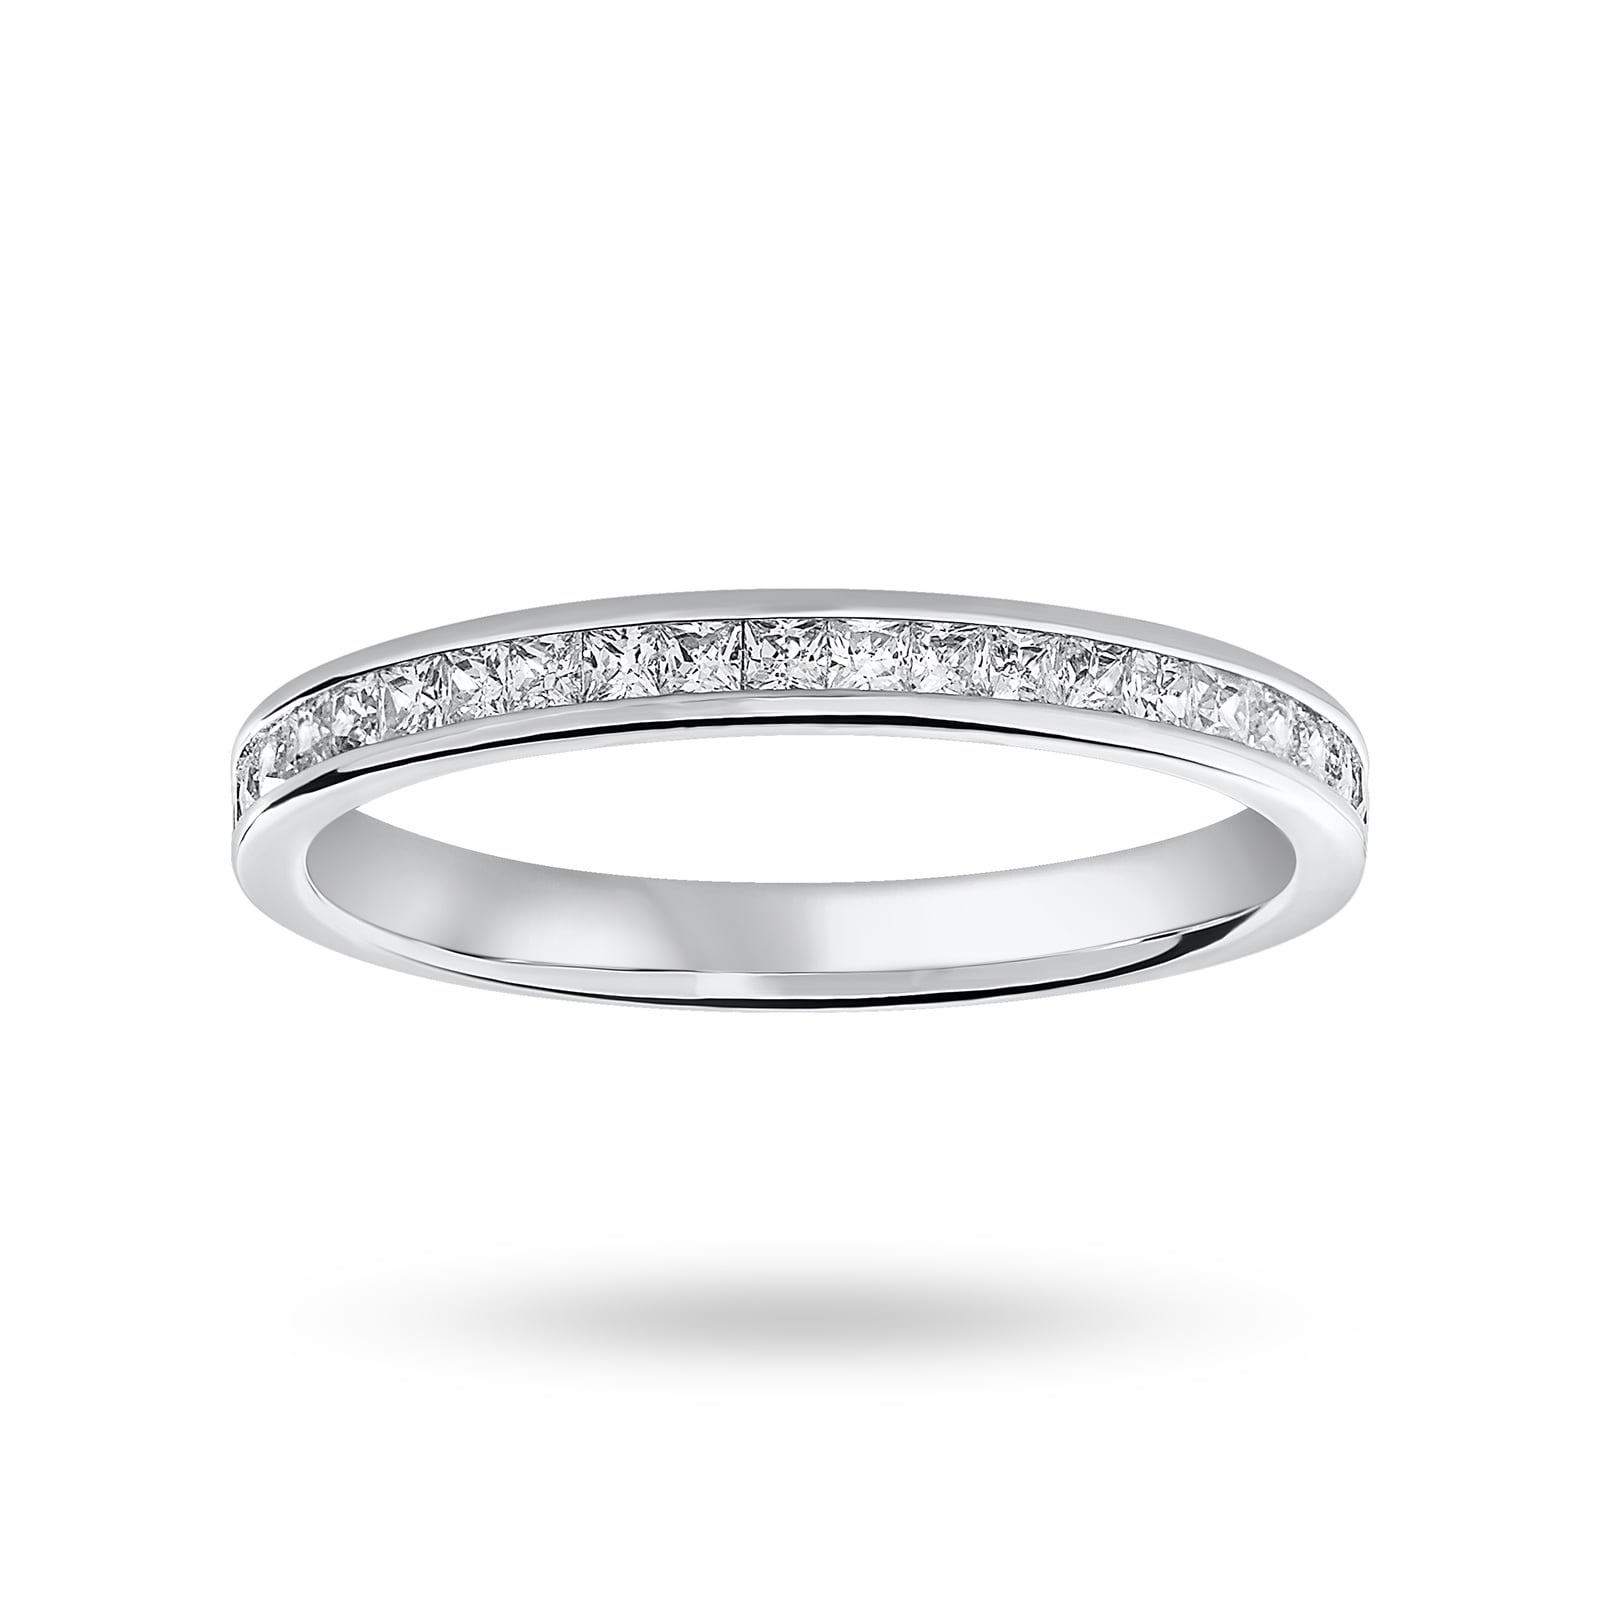 9 Carat White Gold 0.33 Carat Princess Cut Half Eternity Ring - Ring Size N